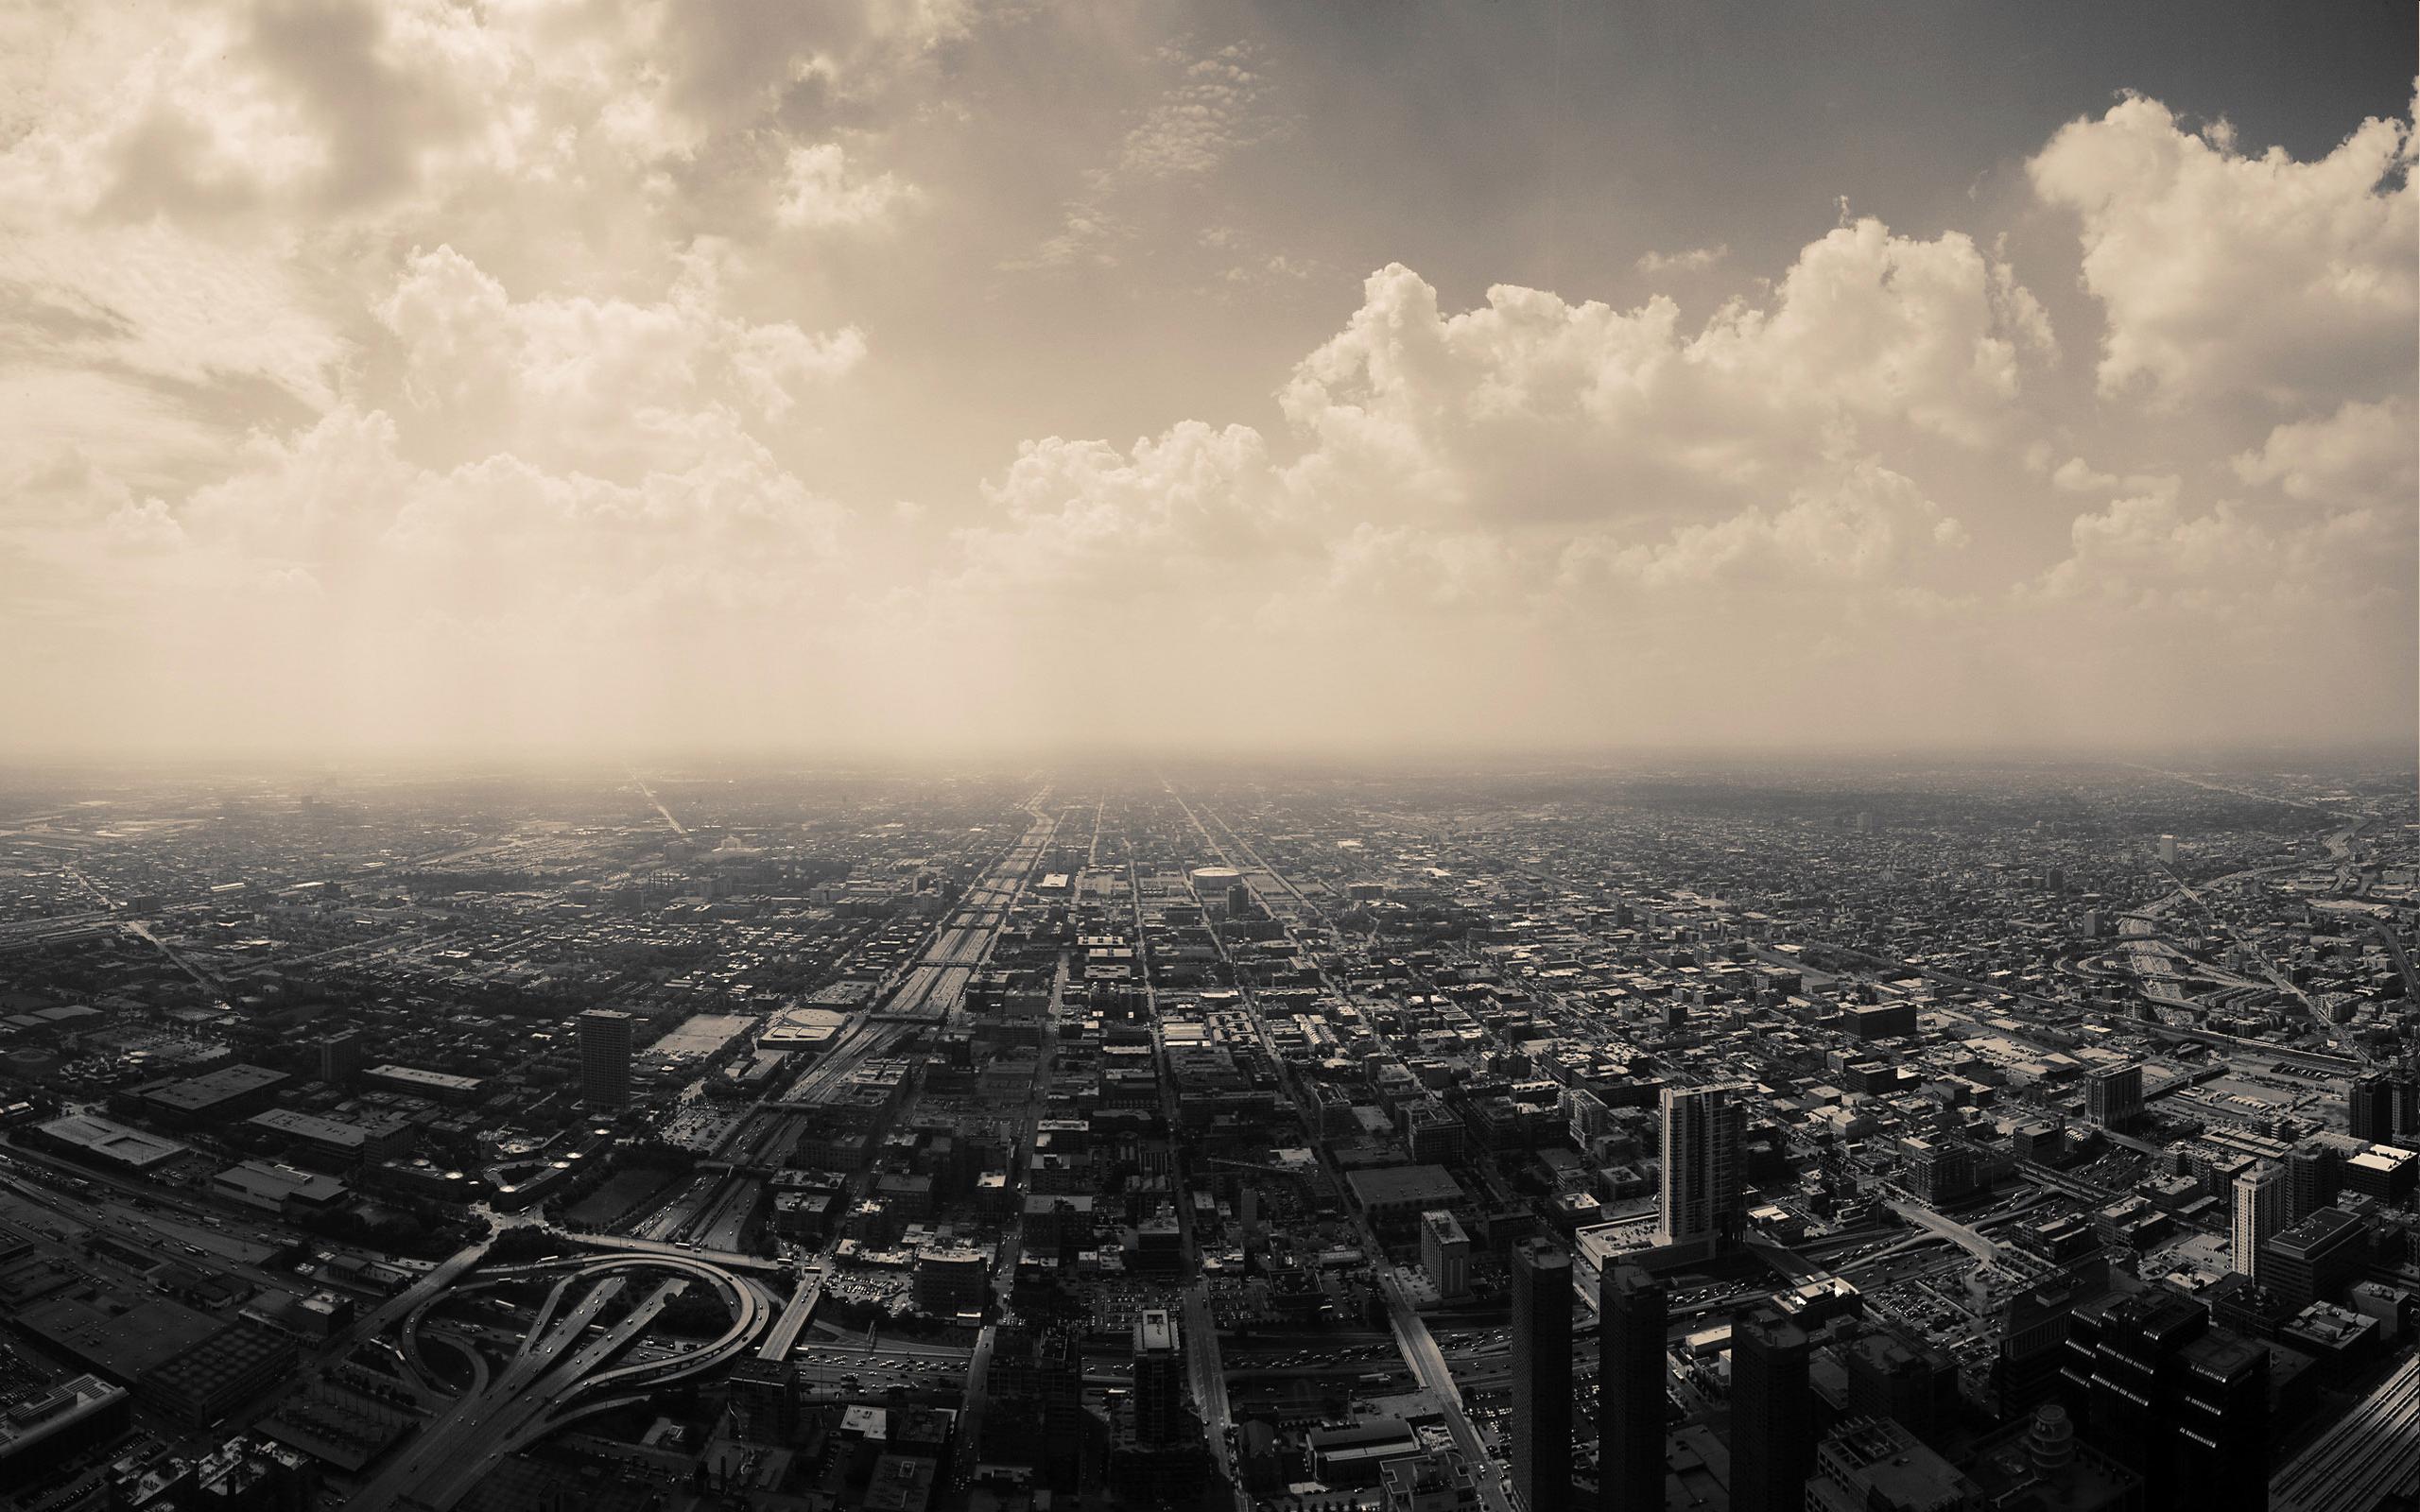 облака, города, горизонты, Чикаго, архитектура, городской, здания, монохромный, города - обои на рабочий стол